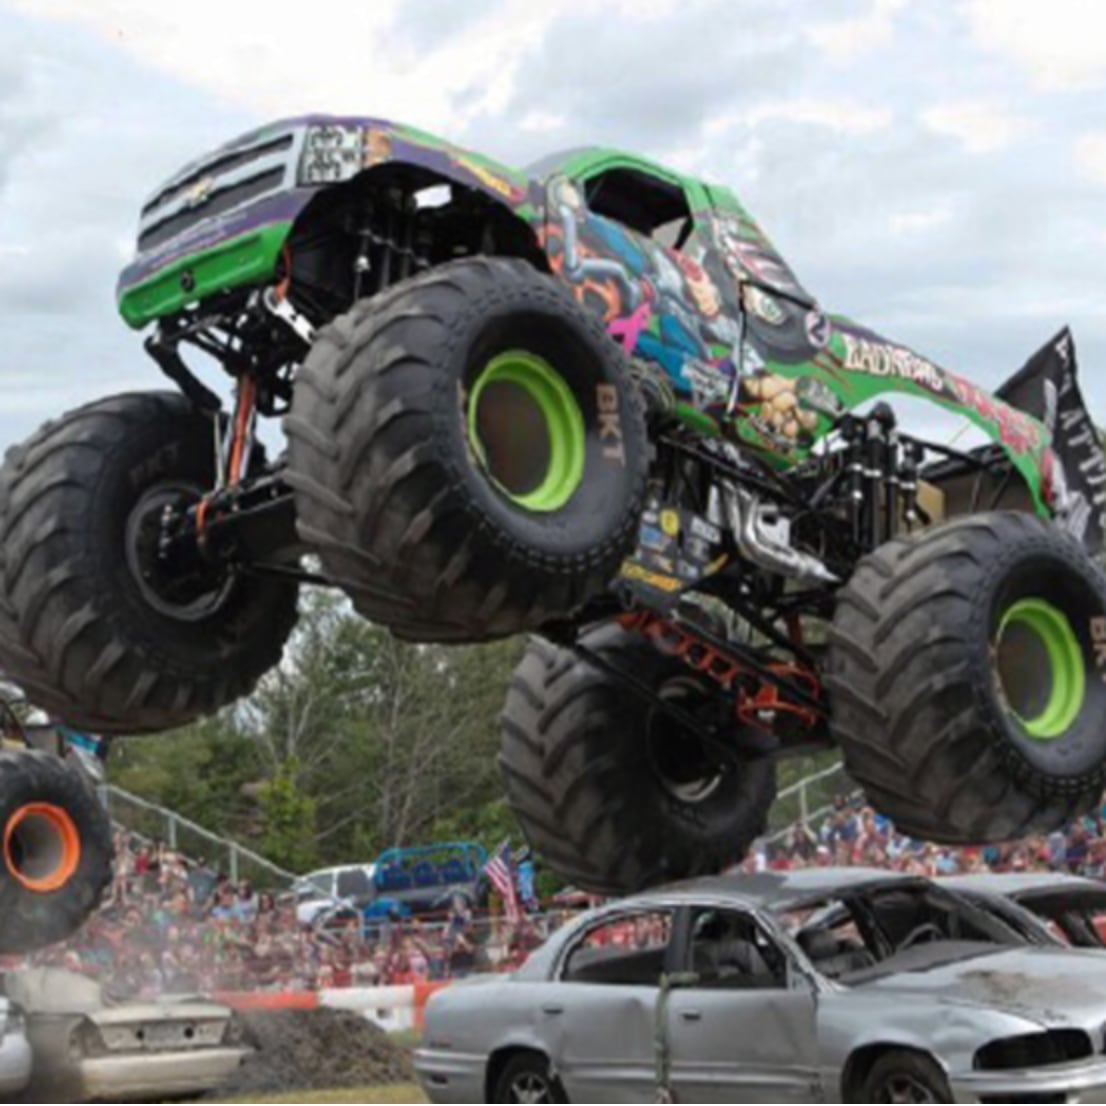 KSR Monster Trucks Grandstand Event